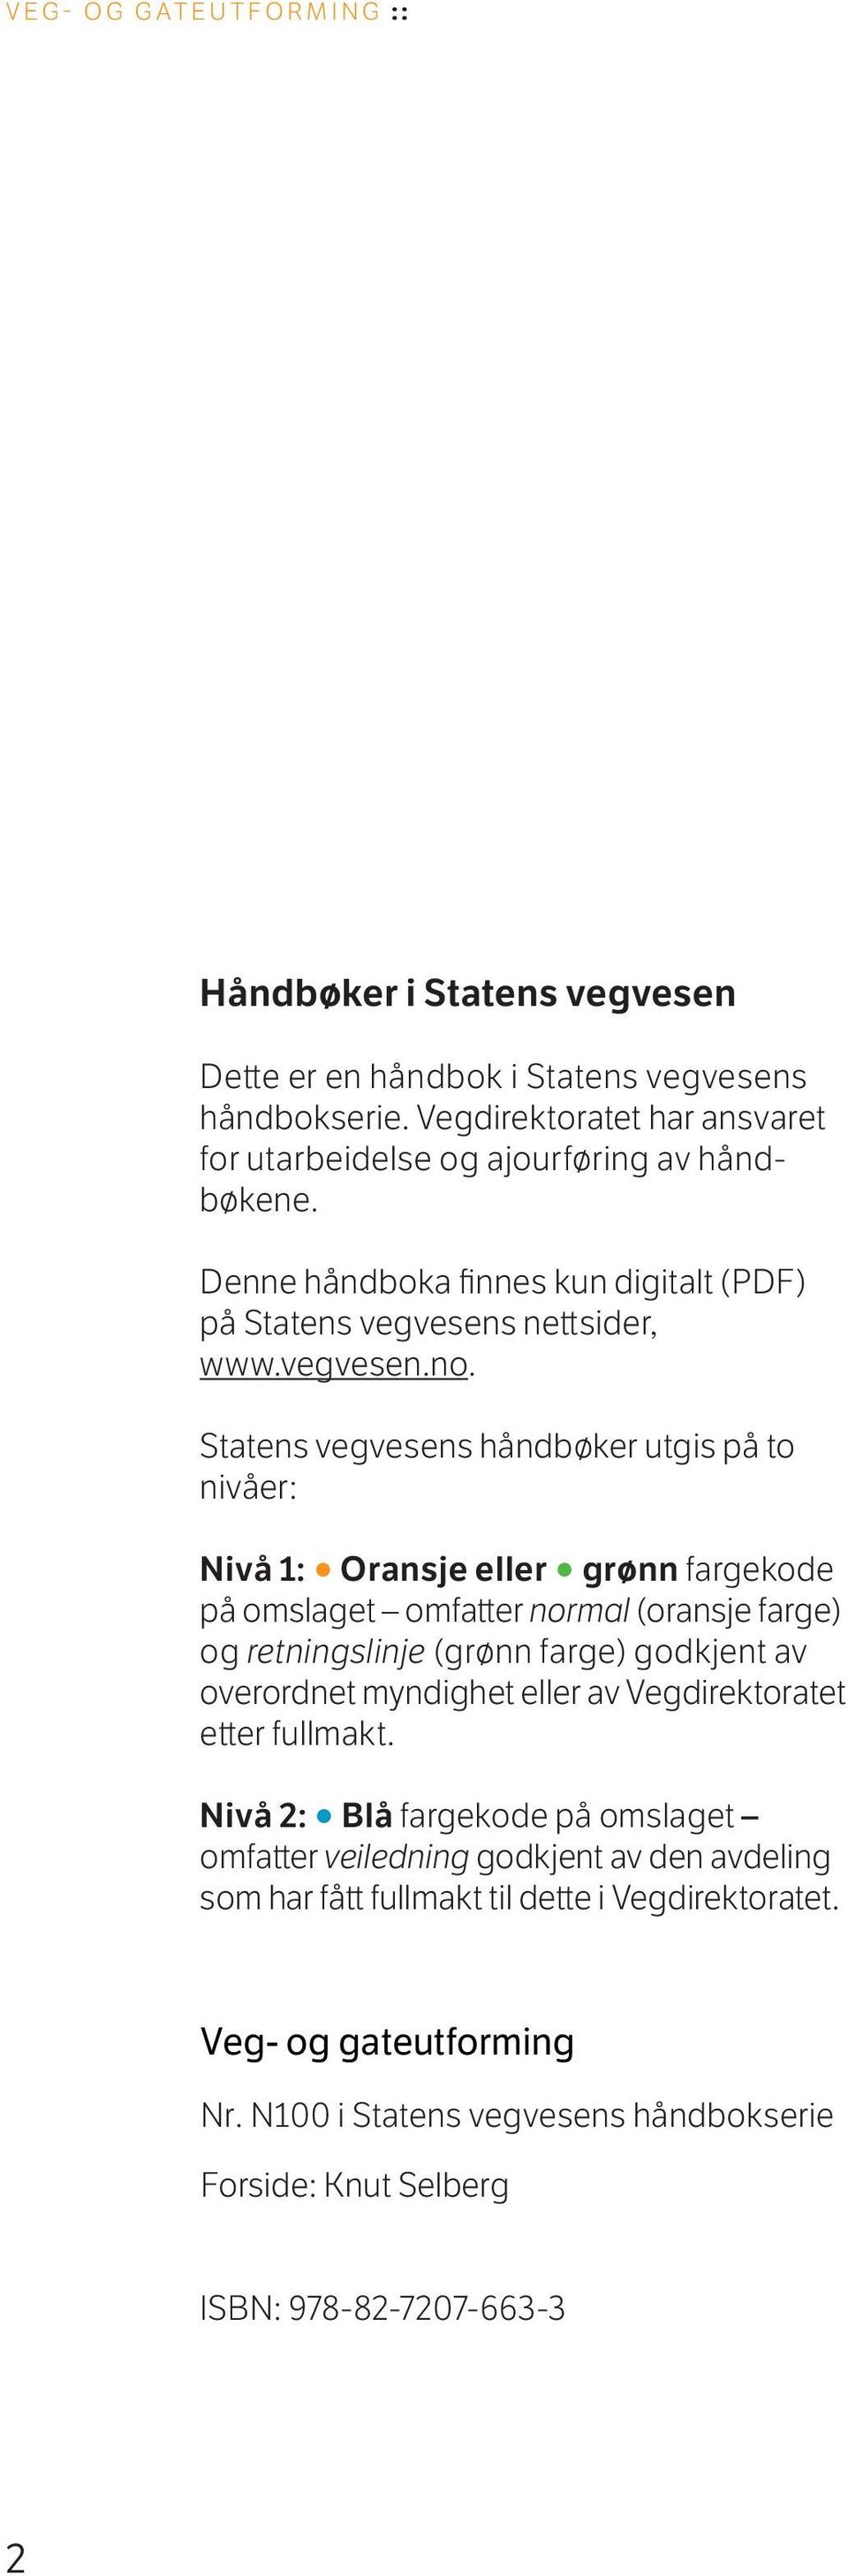 Statens vegvesens håndbøker utgis på to nivåer: Nivå 1: Oransje eller grønn fargekode på omslaget omfatter normal (oransje farge) og retningslinje (grønn farge) godkjent av overordnet